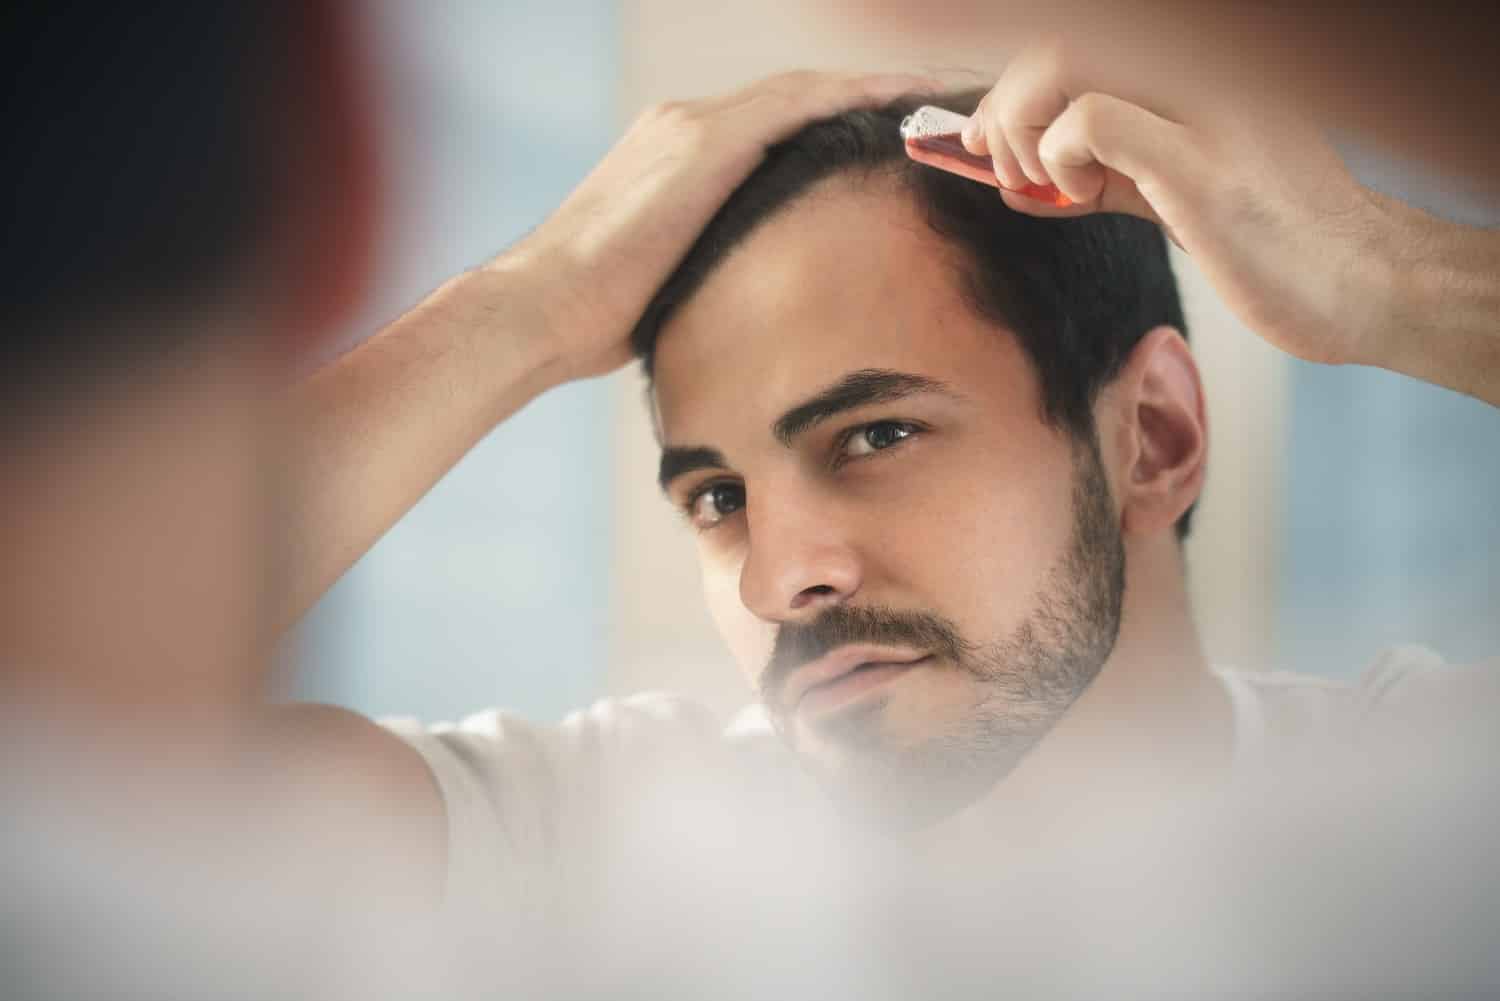 גבר עושה טיפול בנשירת שיער